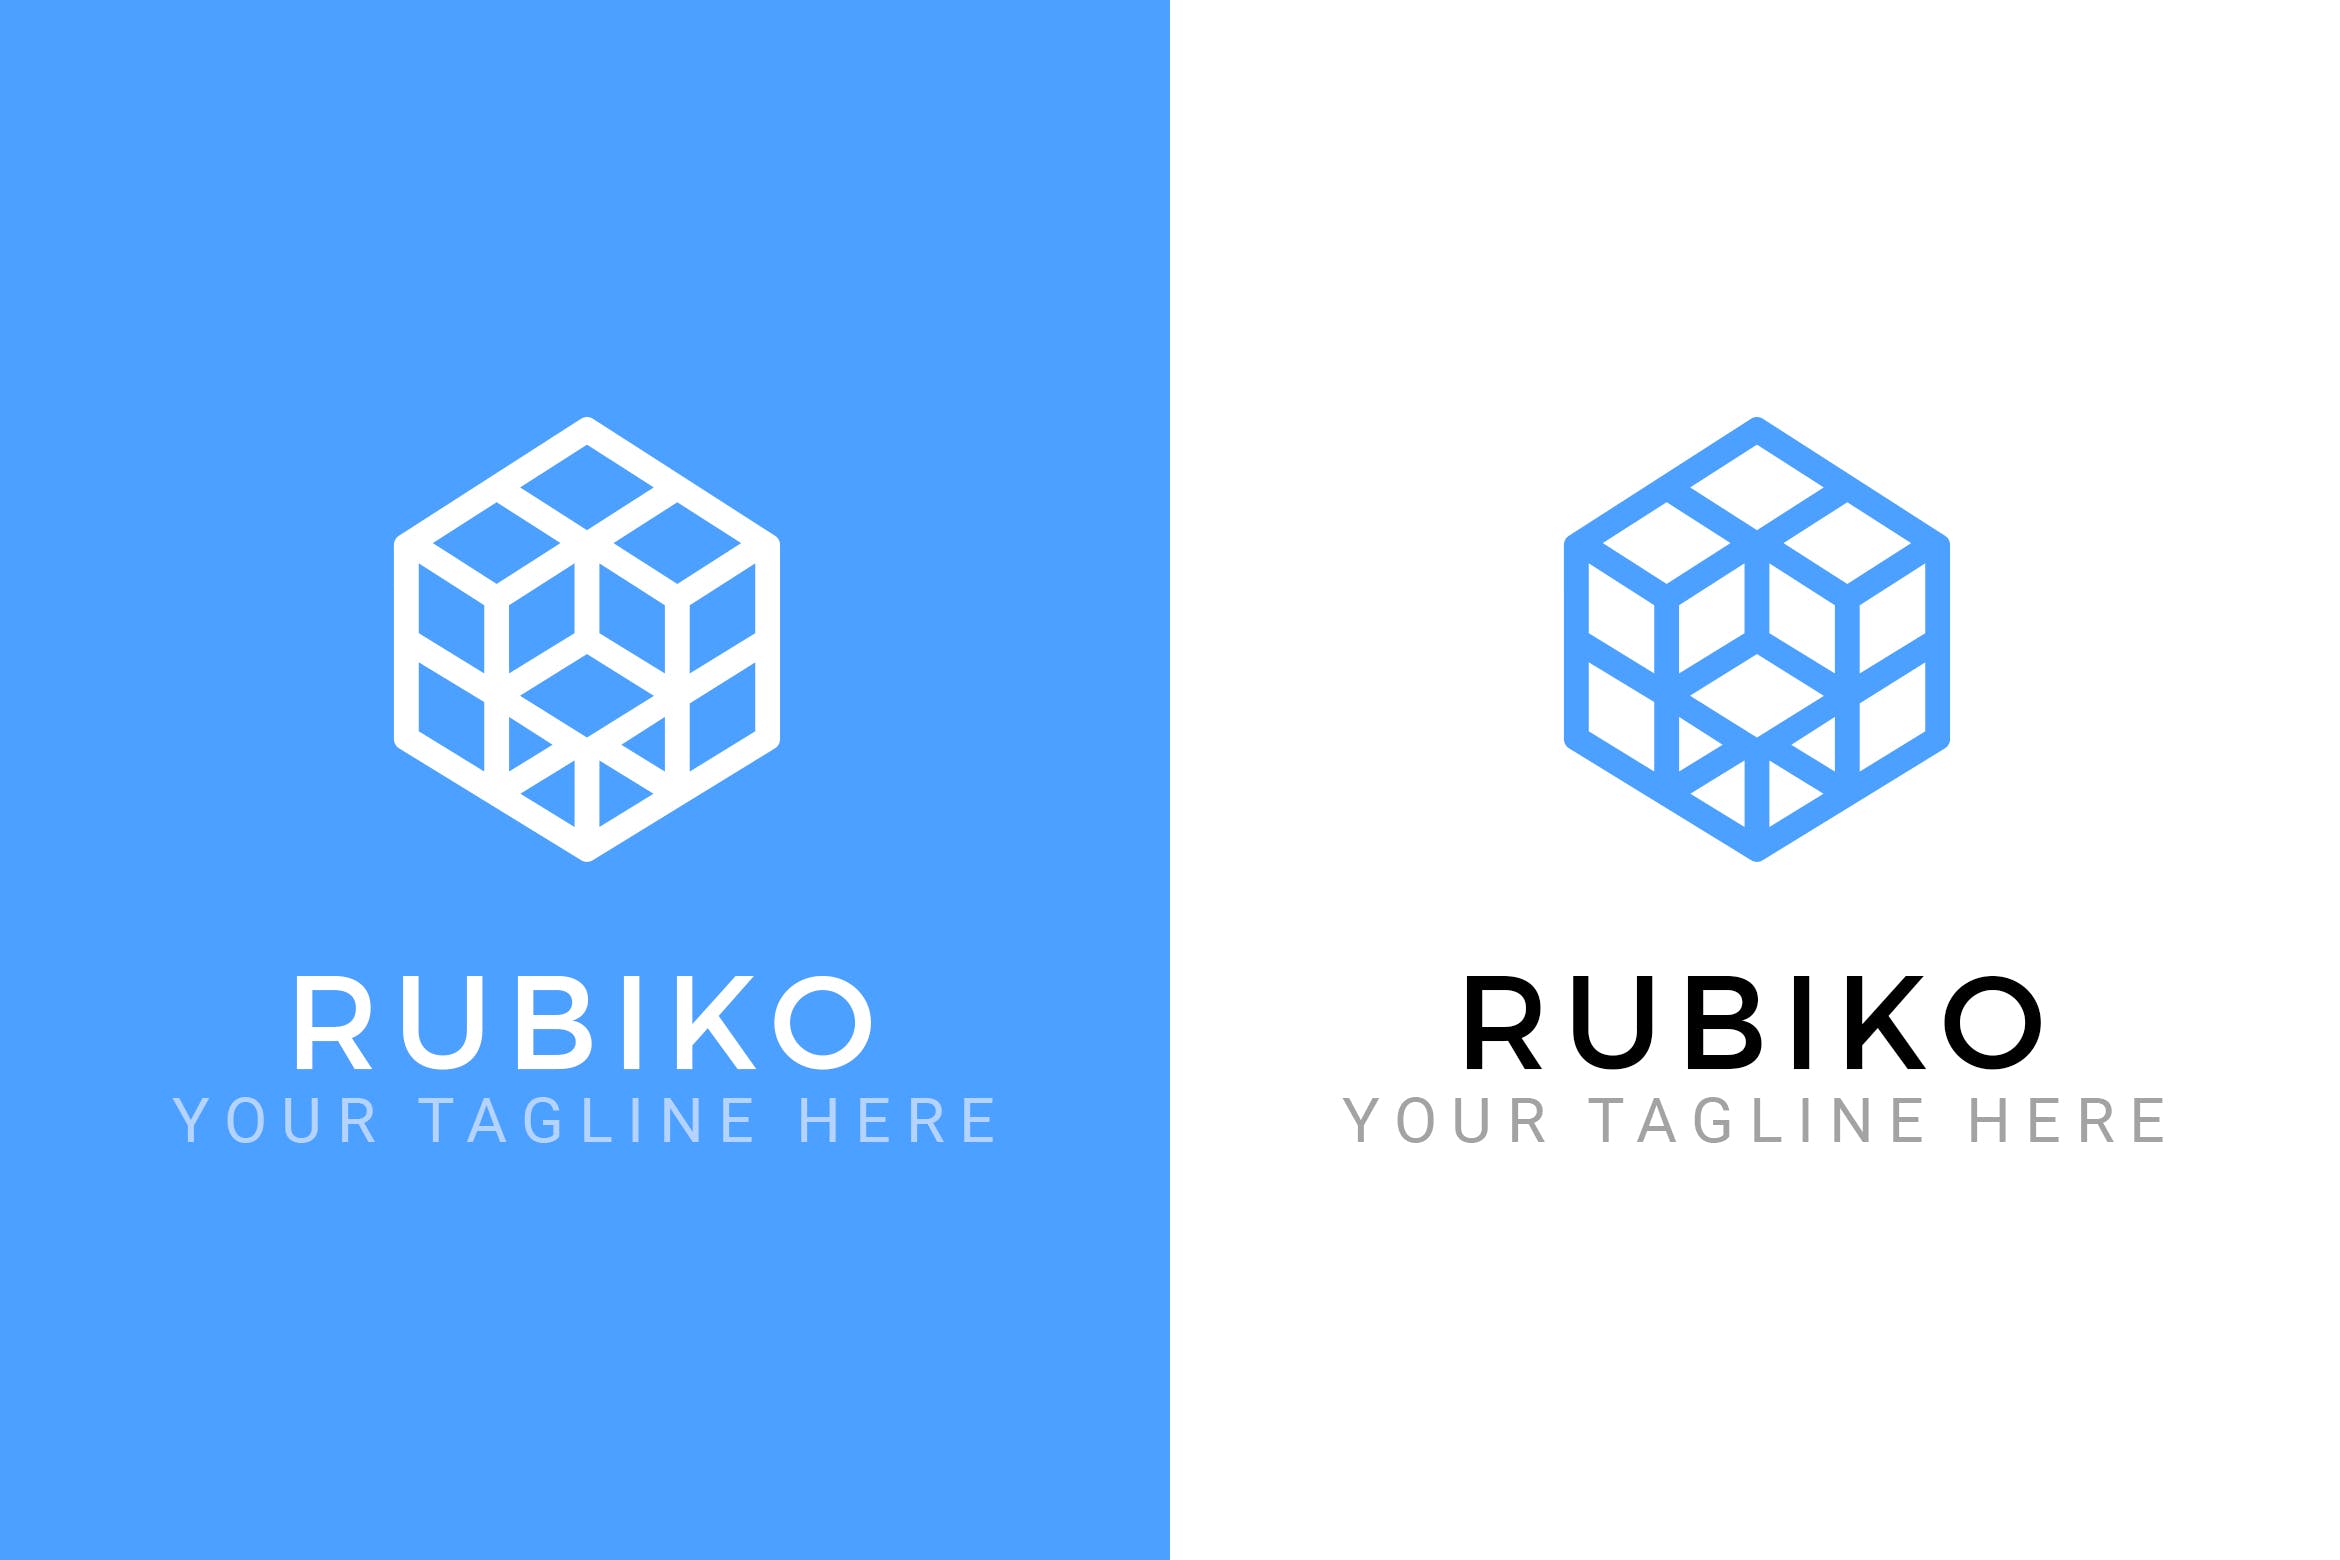 抽象魔方立体图形Logo设计第一素材精选模板 Rubiko – Abstract Logo Template插图